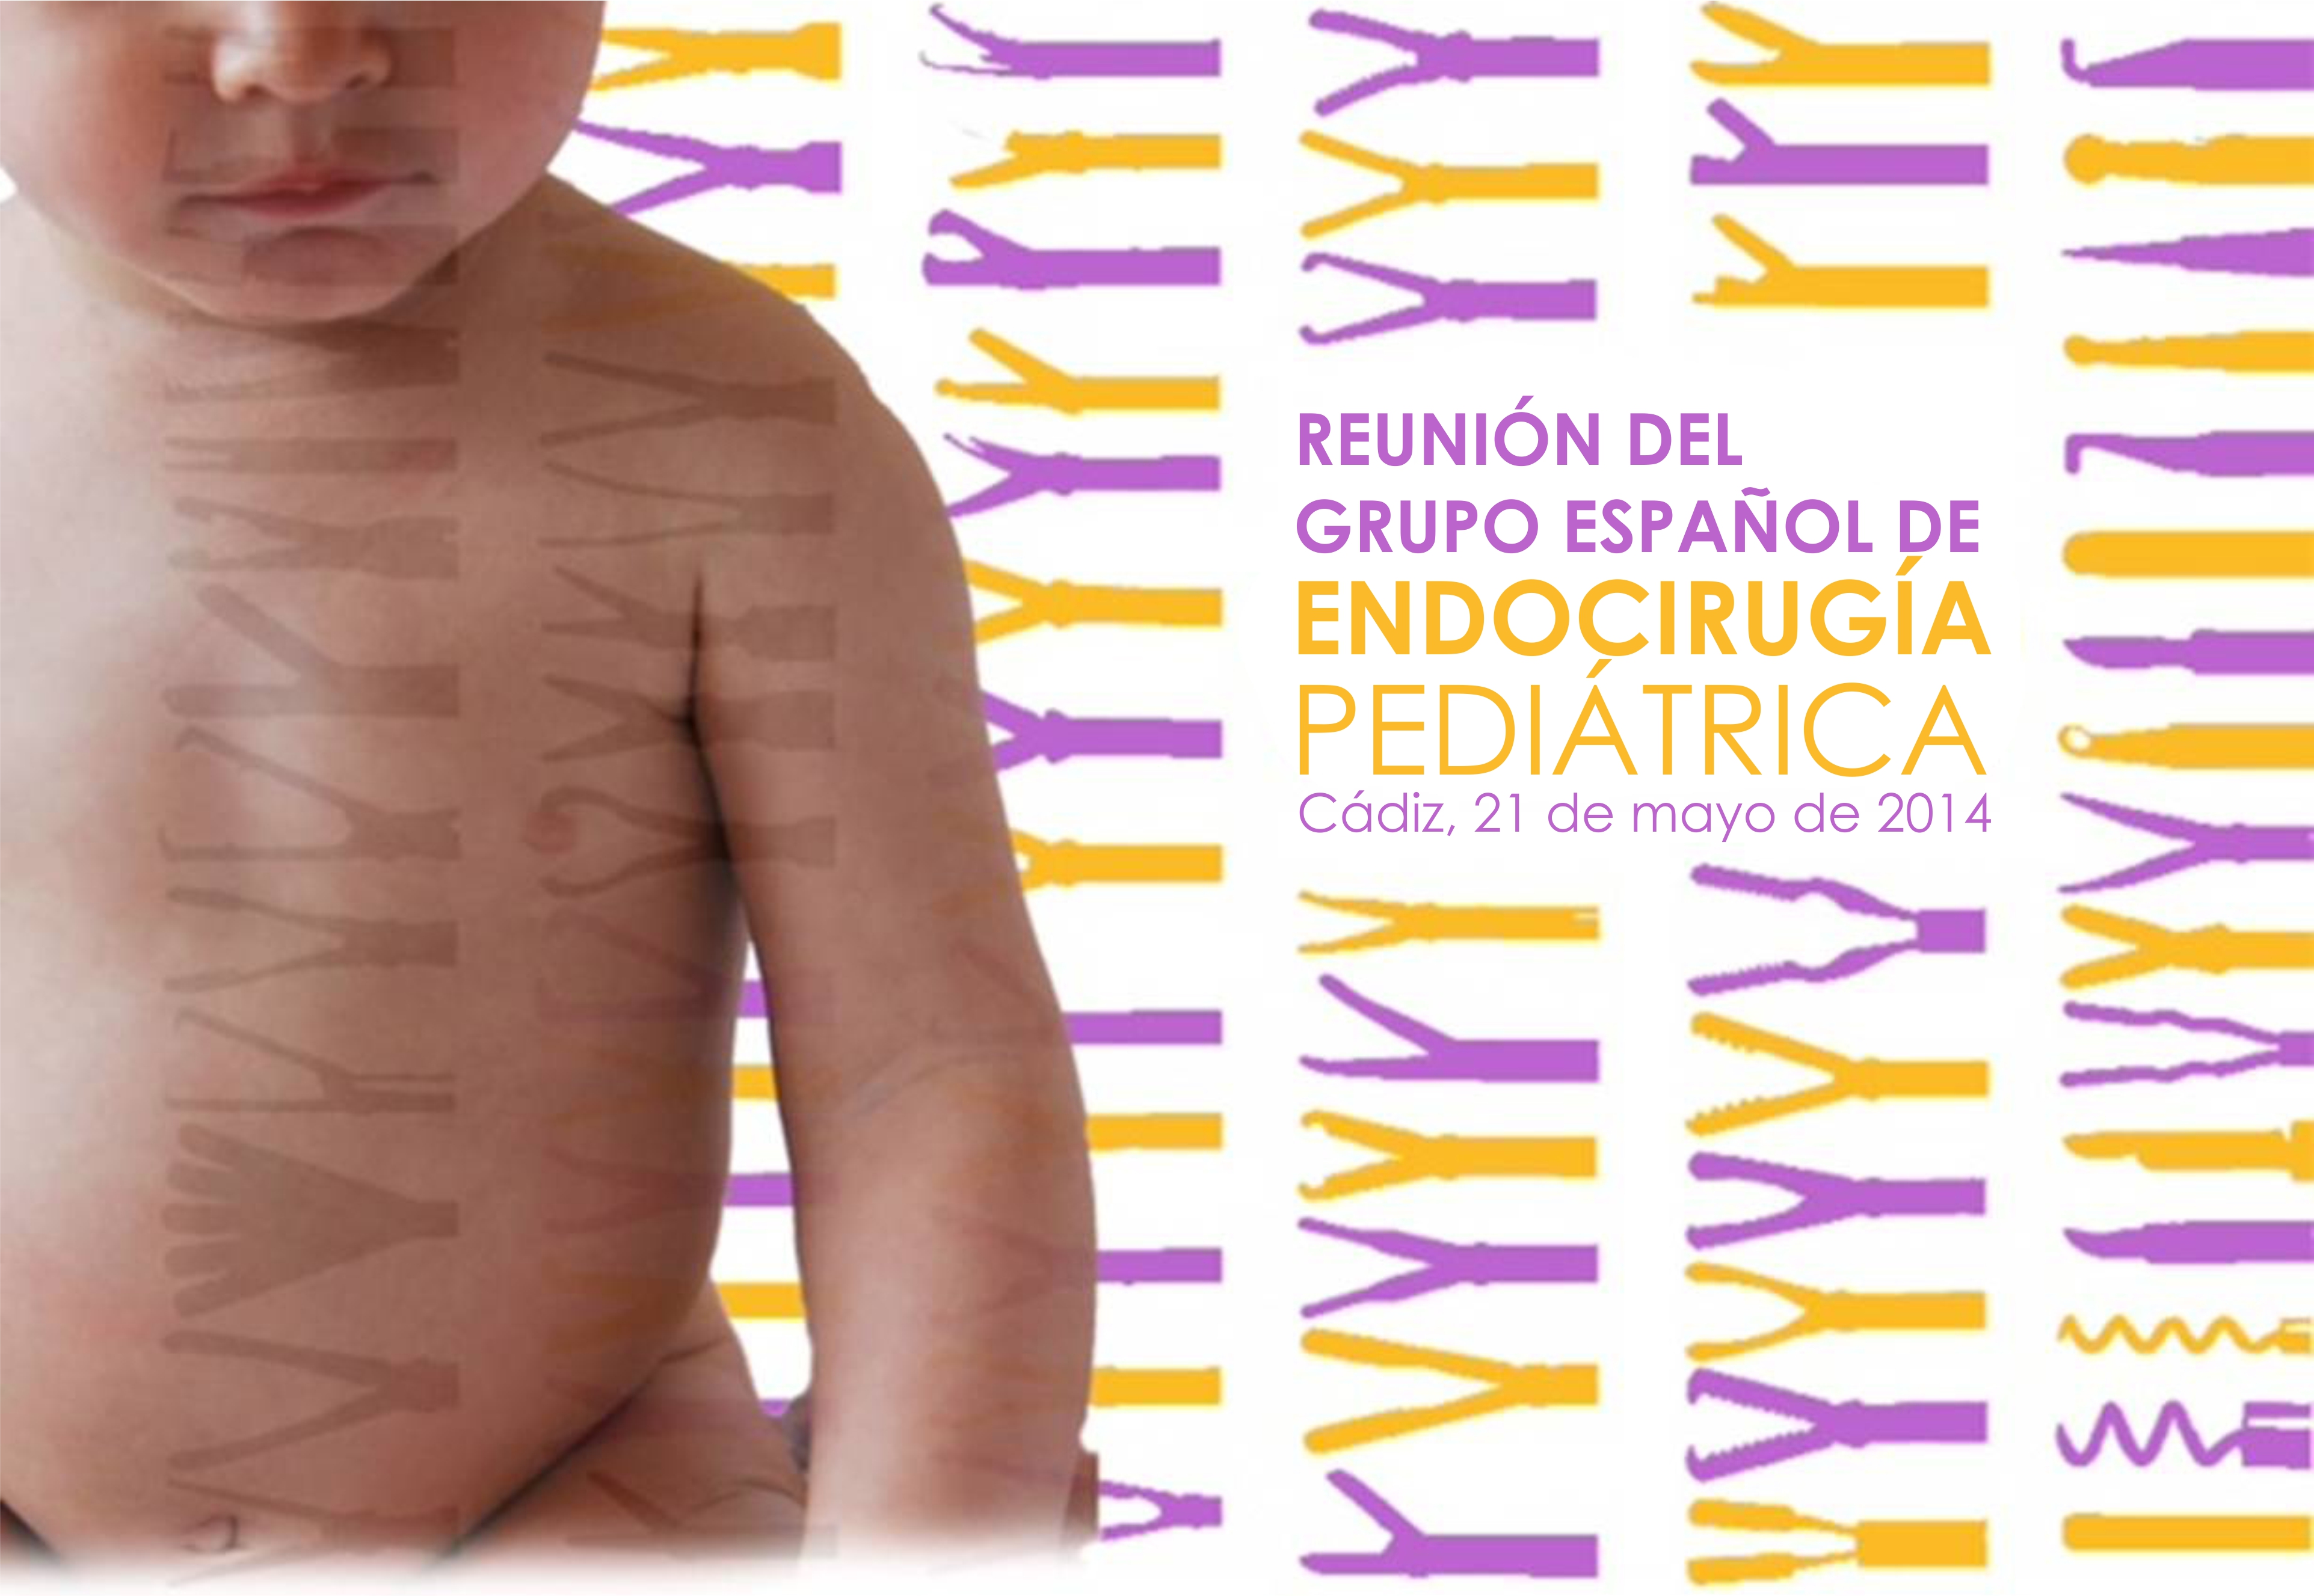 Reunión del Grupo Español de Endocirugía Pediátrica